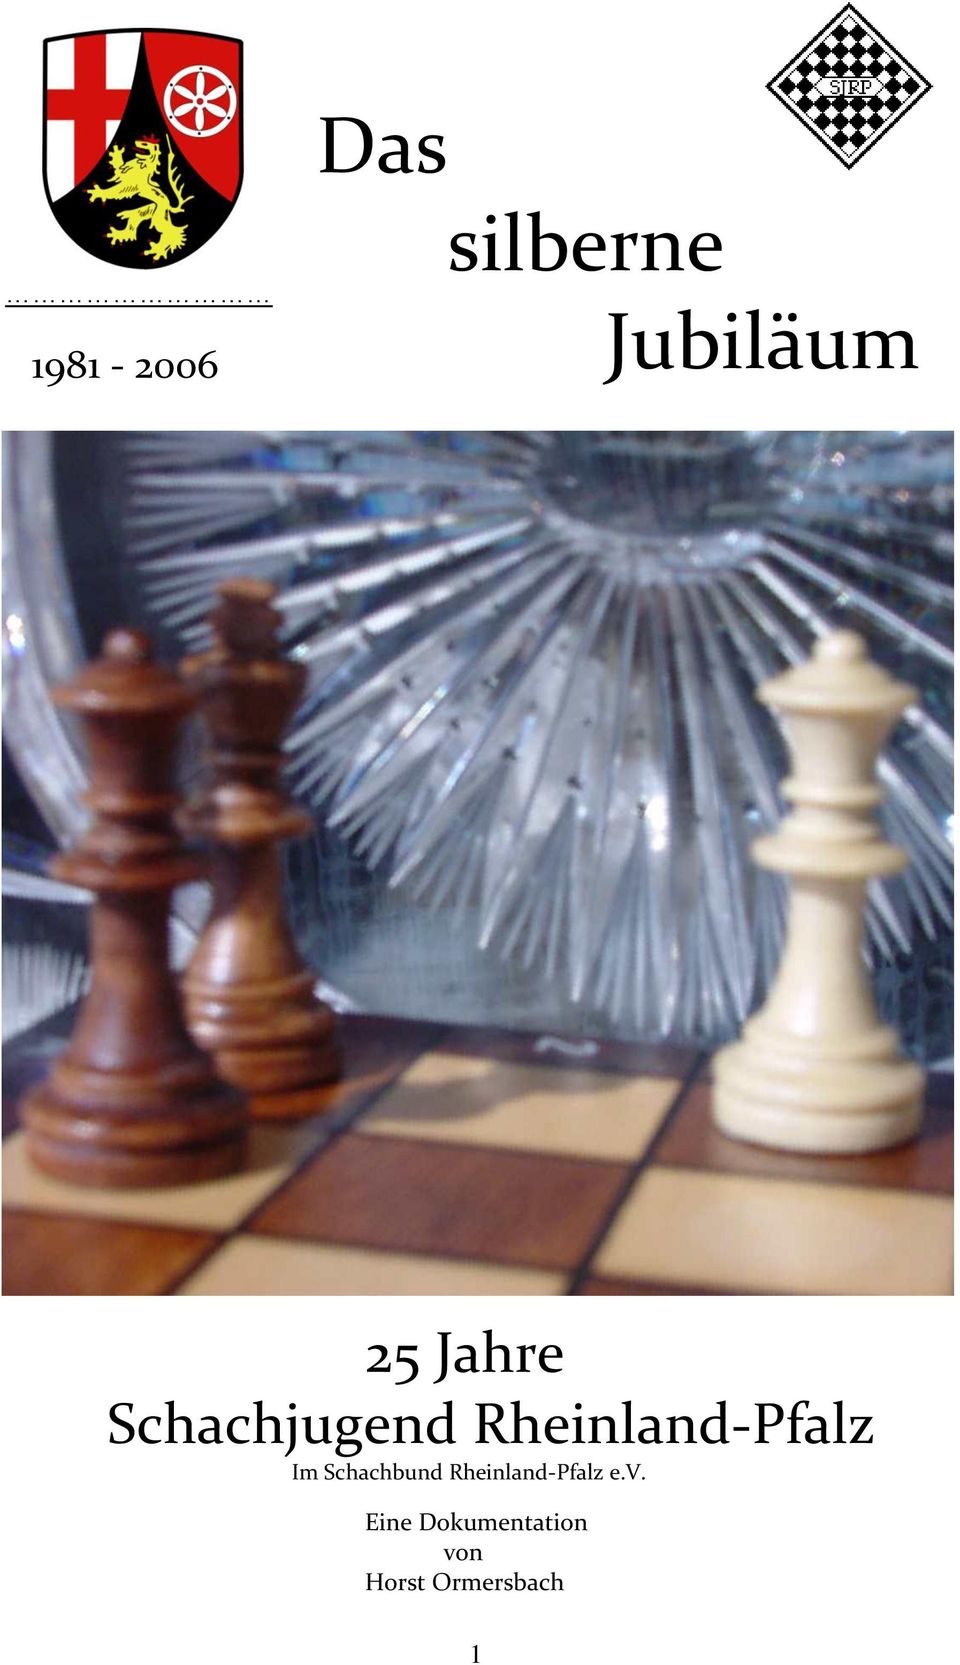 Schachjugend